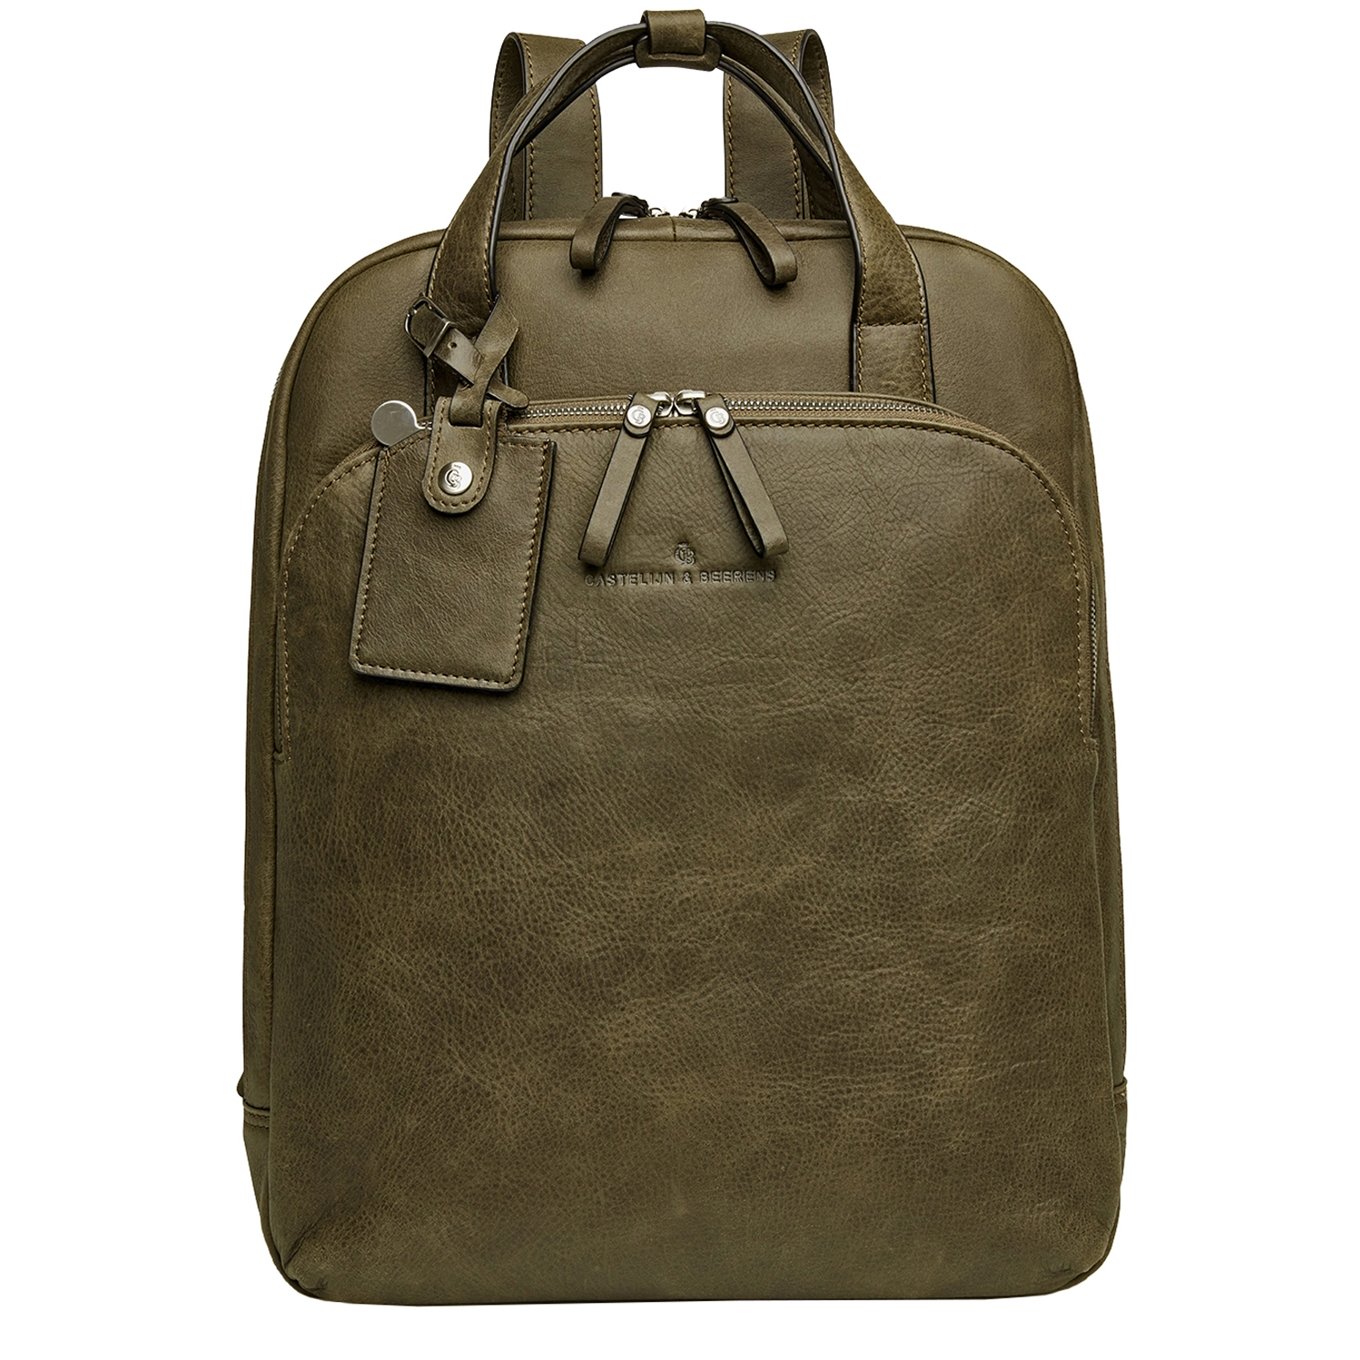 Castelijn & Beerens Carisma Laptop Rugzak 15.6" + tablet groen backpack